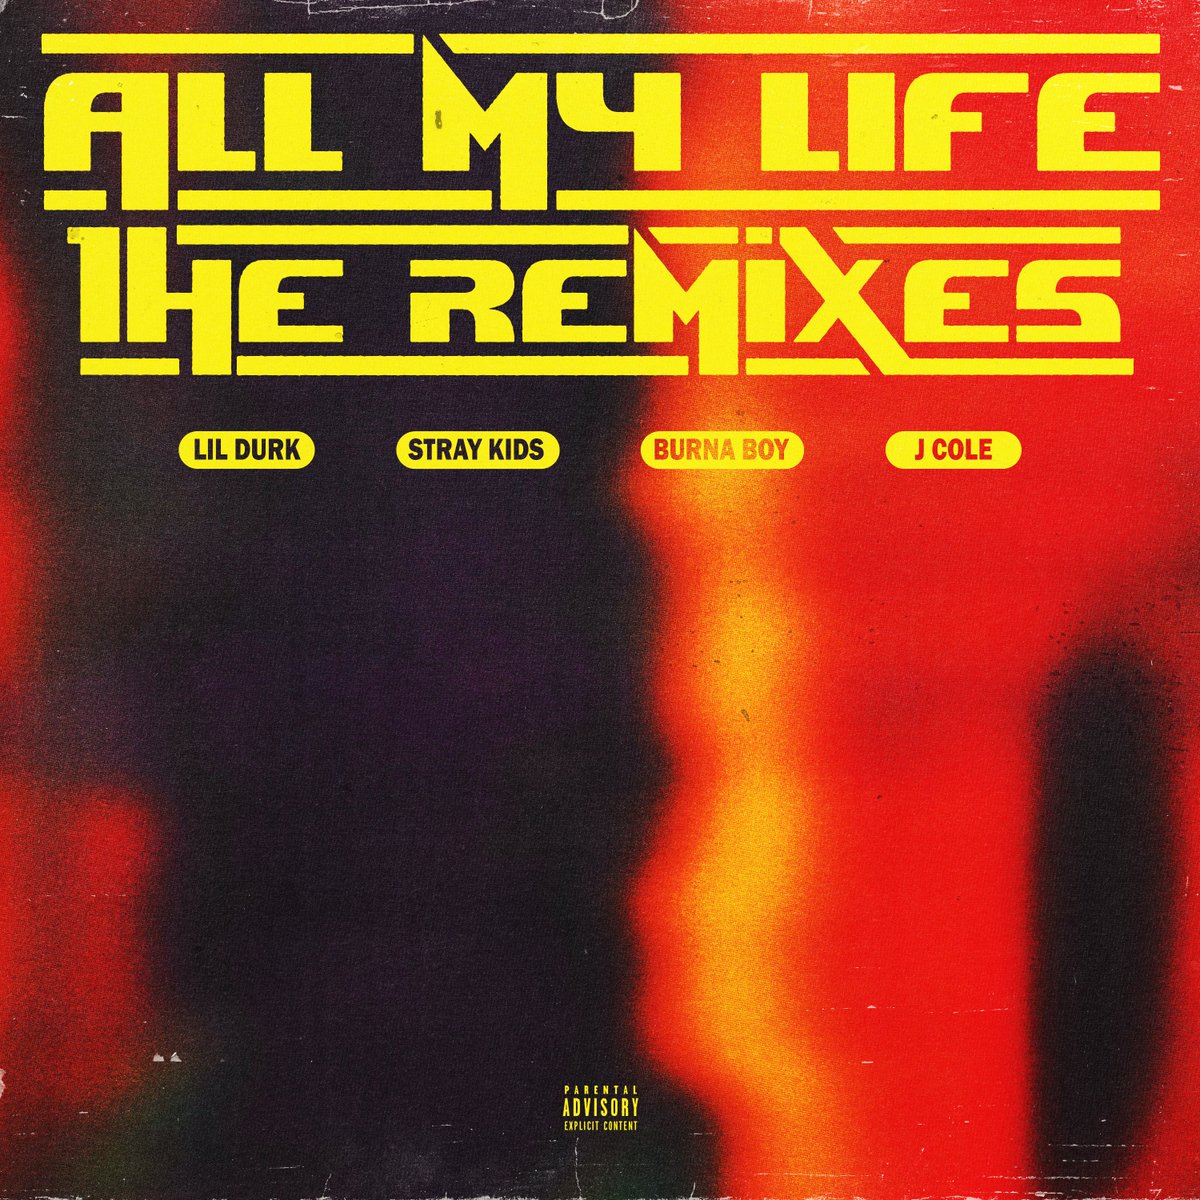 Lil Durk 'All My Life (Stray Kids Remix)' 

Released Online
 
MelOn bit.ly/45yWjpM
FLO bit.ly/3tvlWuj
genie bit.ly/46F4HoU
Bugs bit.ly/46tBb5J

#StrayKids #스트레이키즈
#LilDurk #AllMyLife #StrayKidsRemix
#YouMakeStrayKidsStay
@lildurk